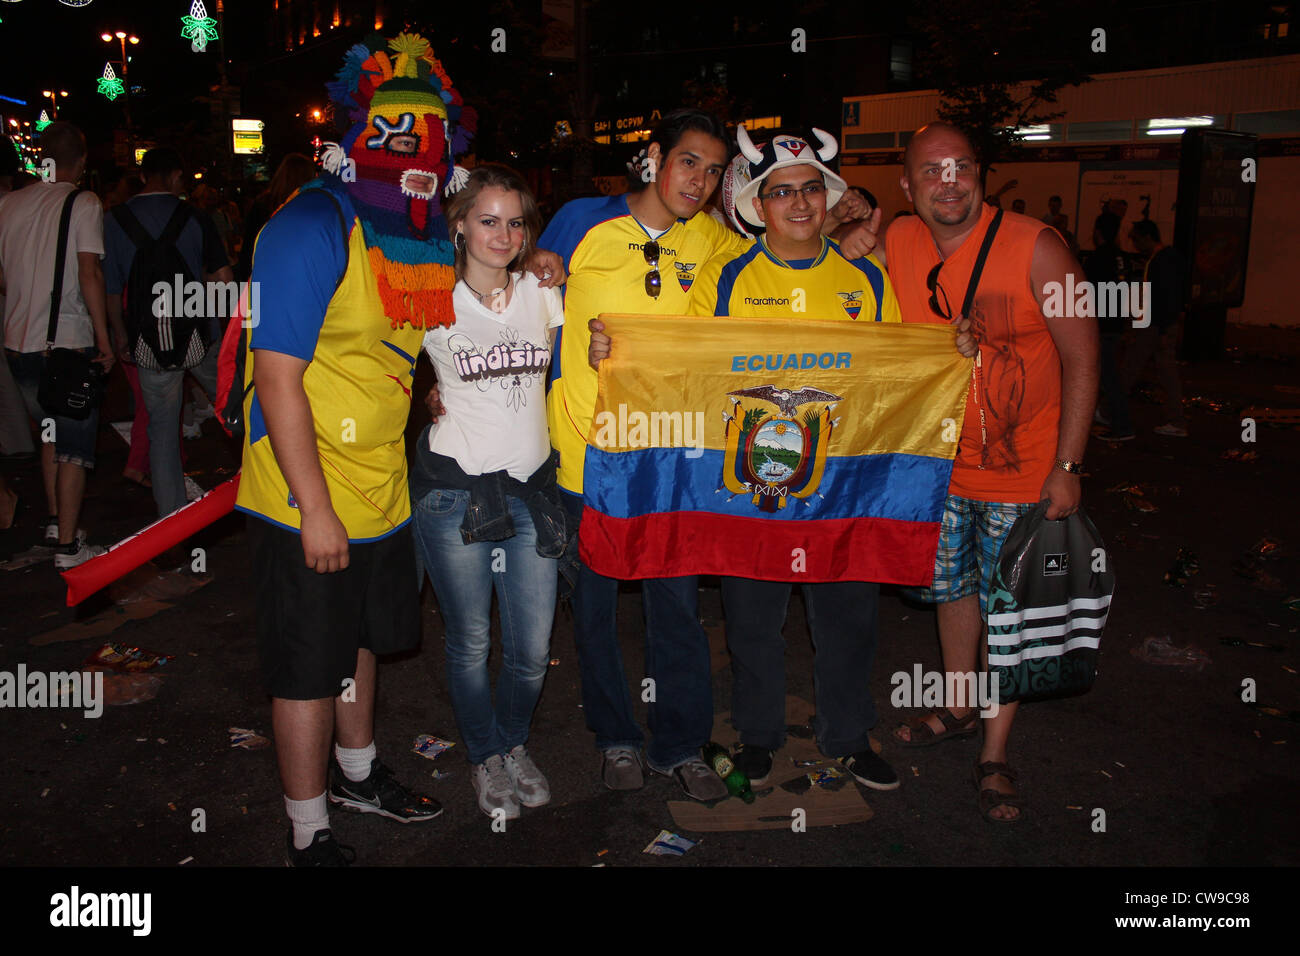 Equador fans. Finale. Kiev, Ukraine, d'Europe de Football 2012 Banque D'Images